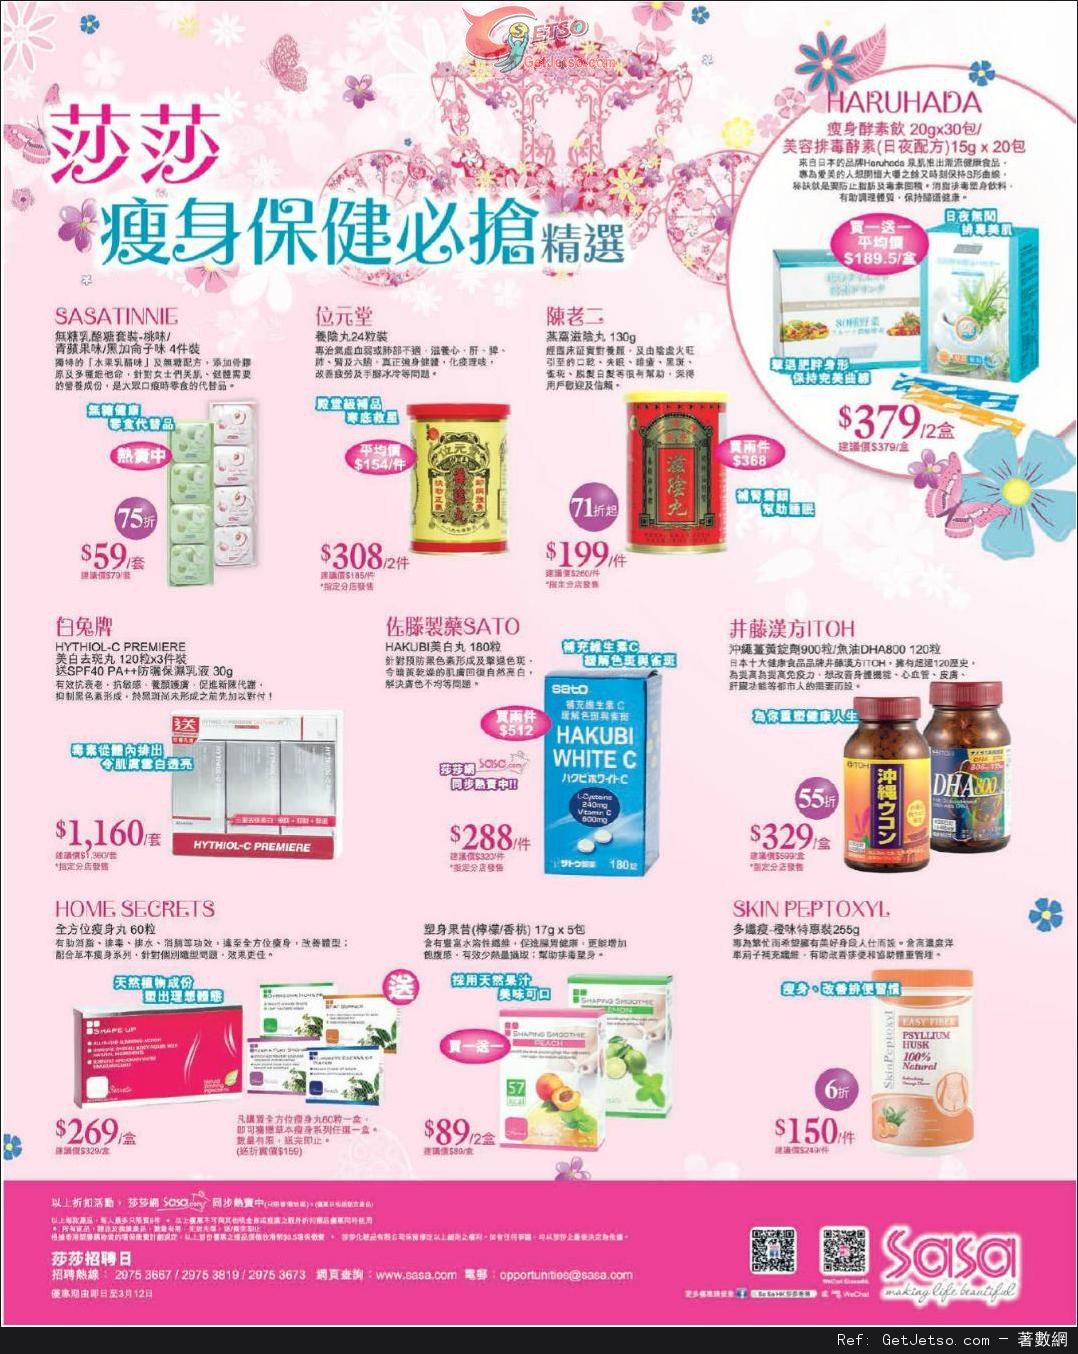 莎莎瘦身保健產品購買優惠(至14年3月12日)圖片1